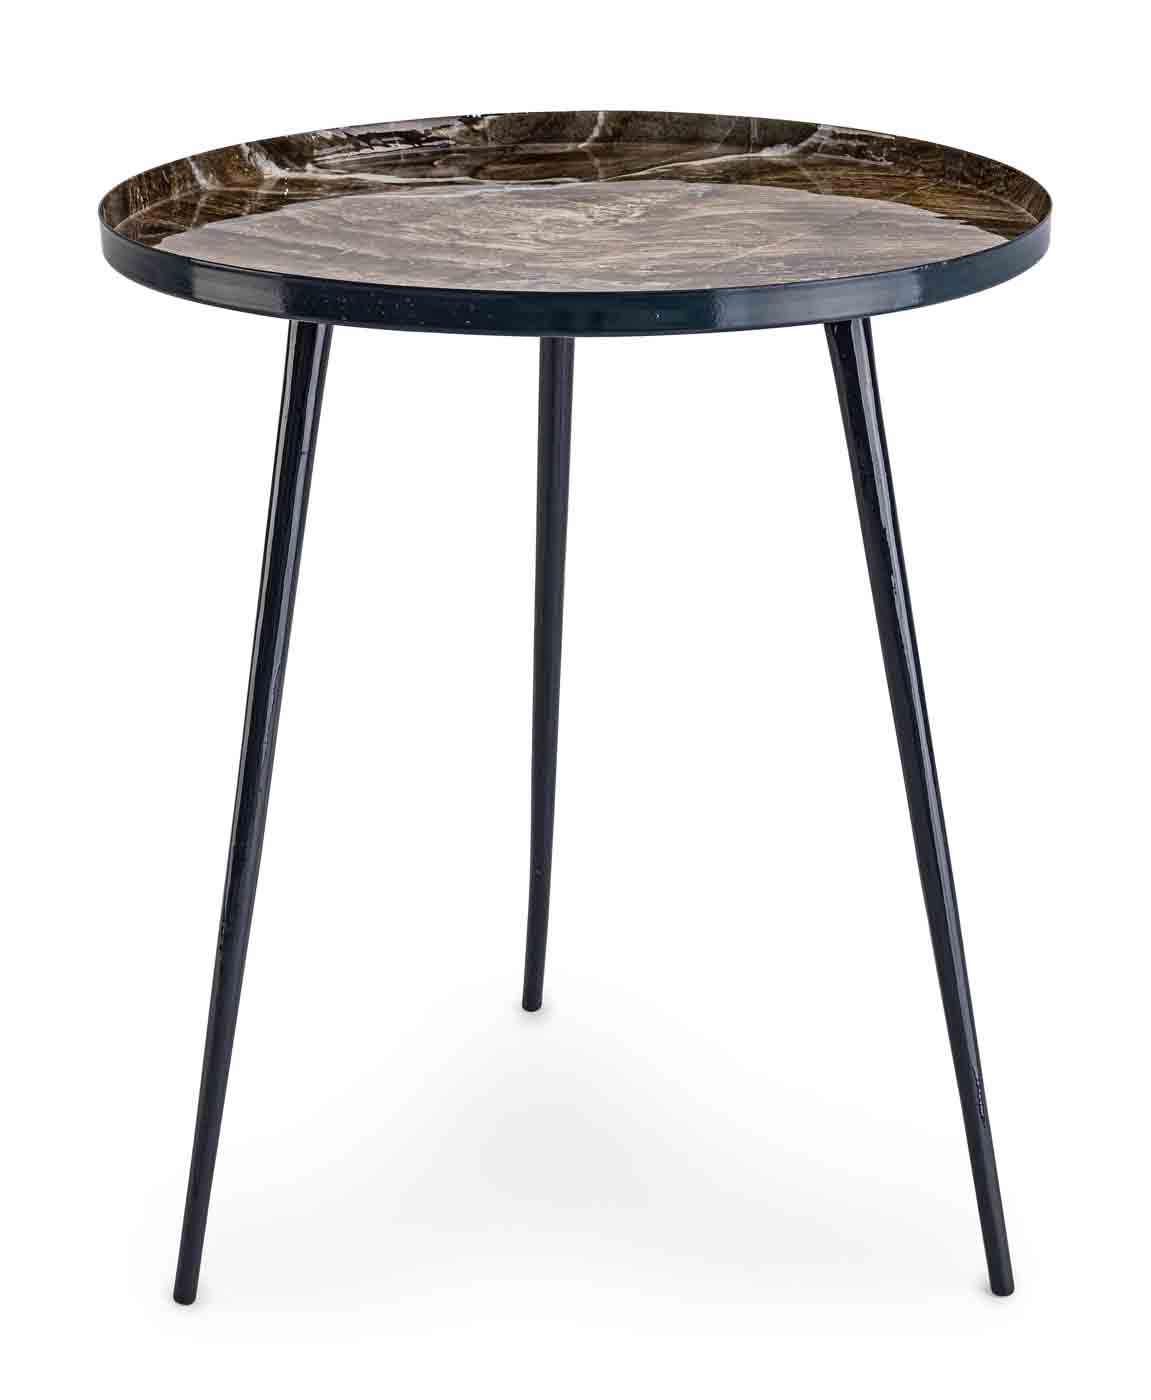 Beistelltisch Kirti in einem modernen Design. Gefertigt aus schwarz lackiertem Metall. Tischplatte mit einem Muster. Marke Bizotto.